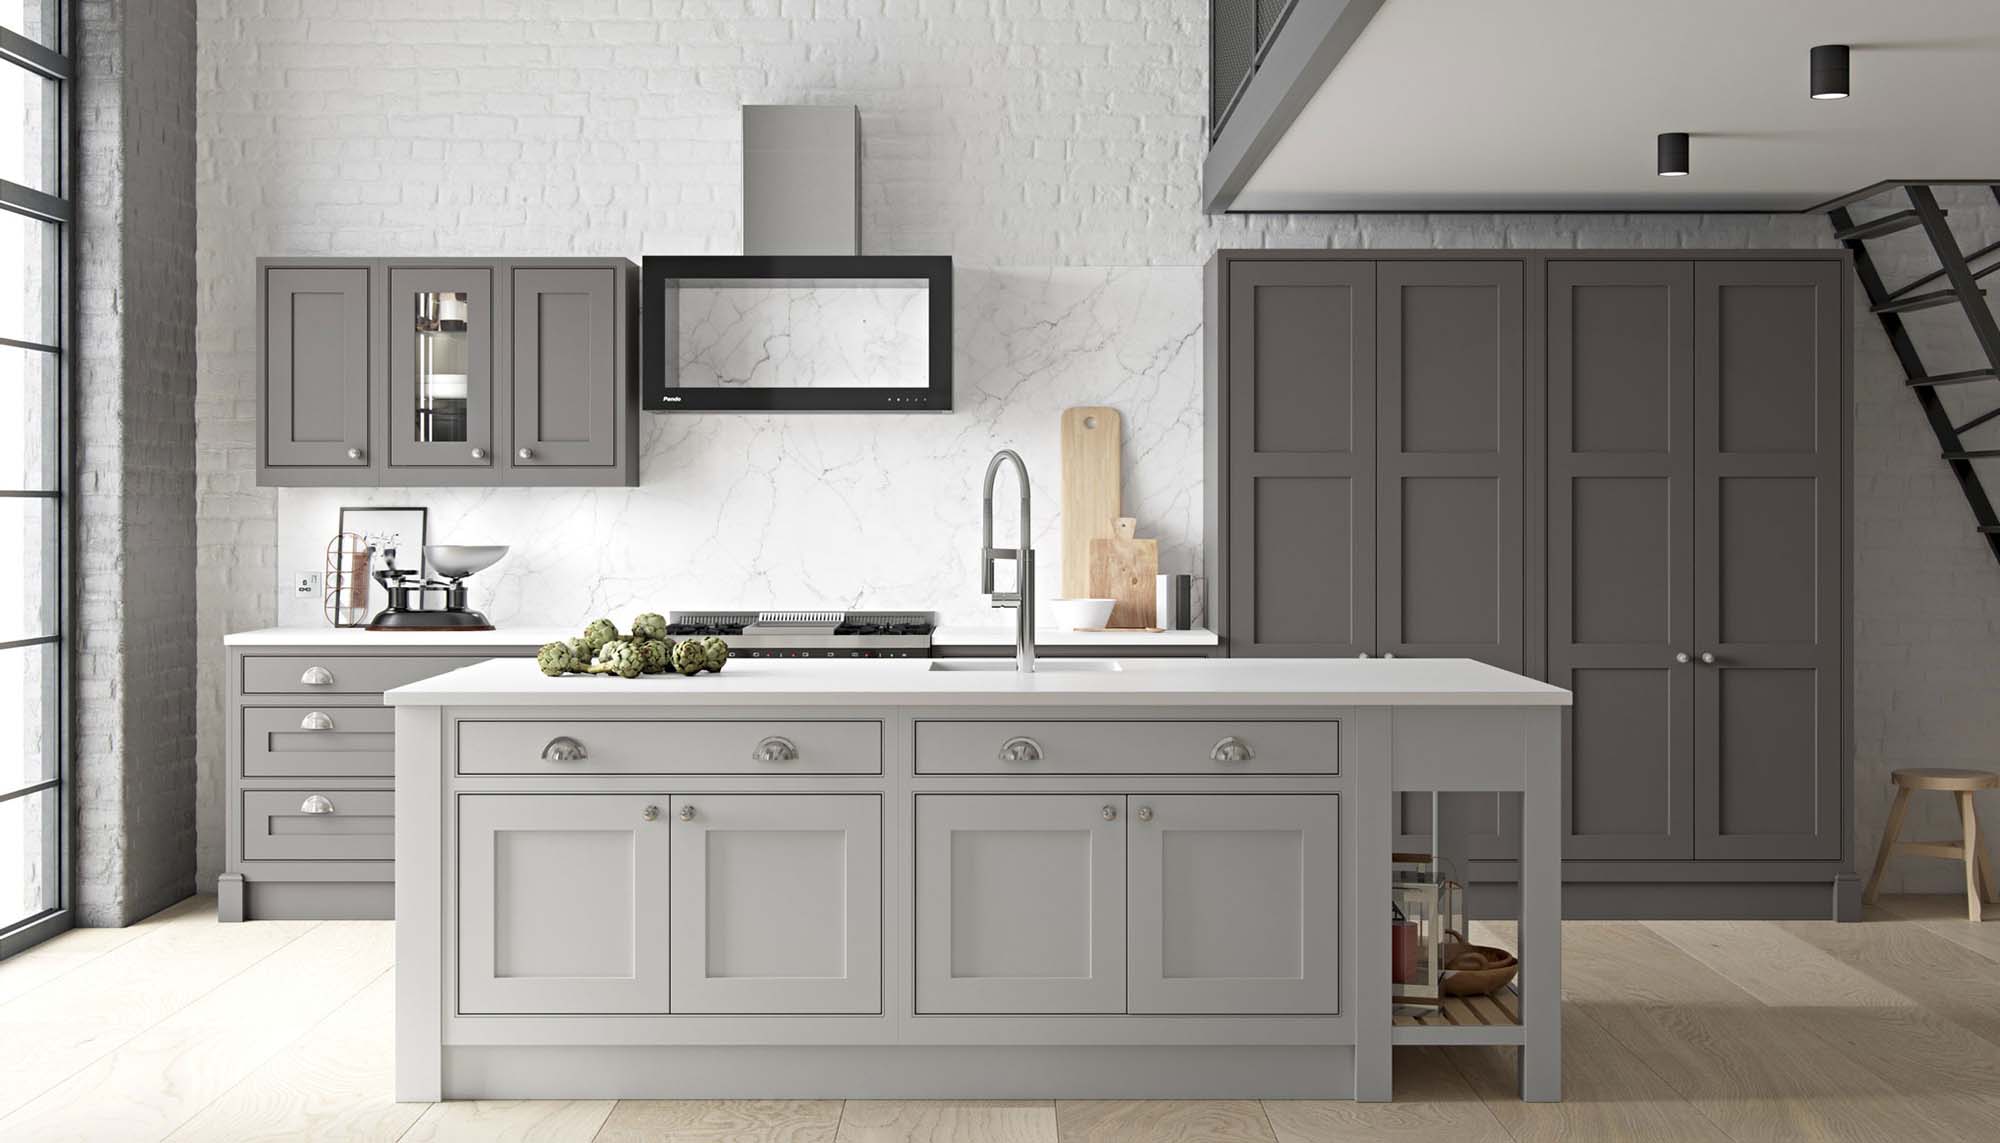 luxury kitchen design ideas light and dark gray kitchen cabinets Gambrick top NJ home builder